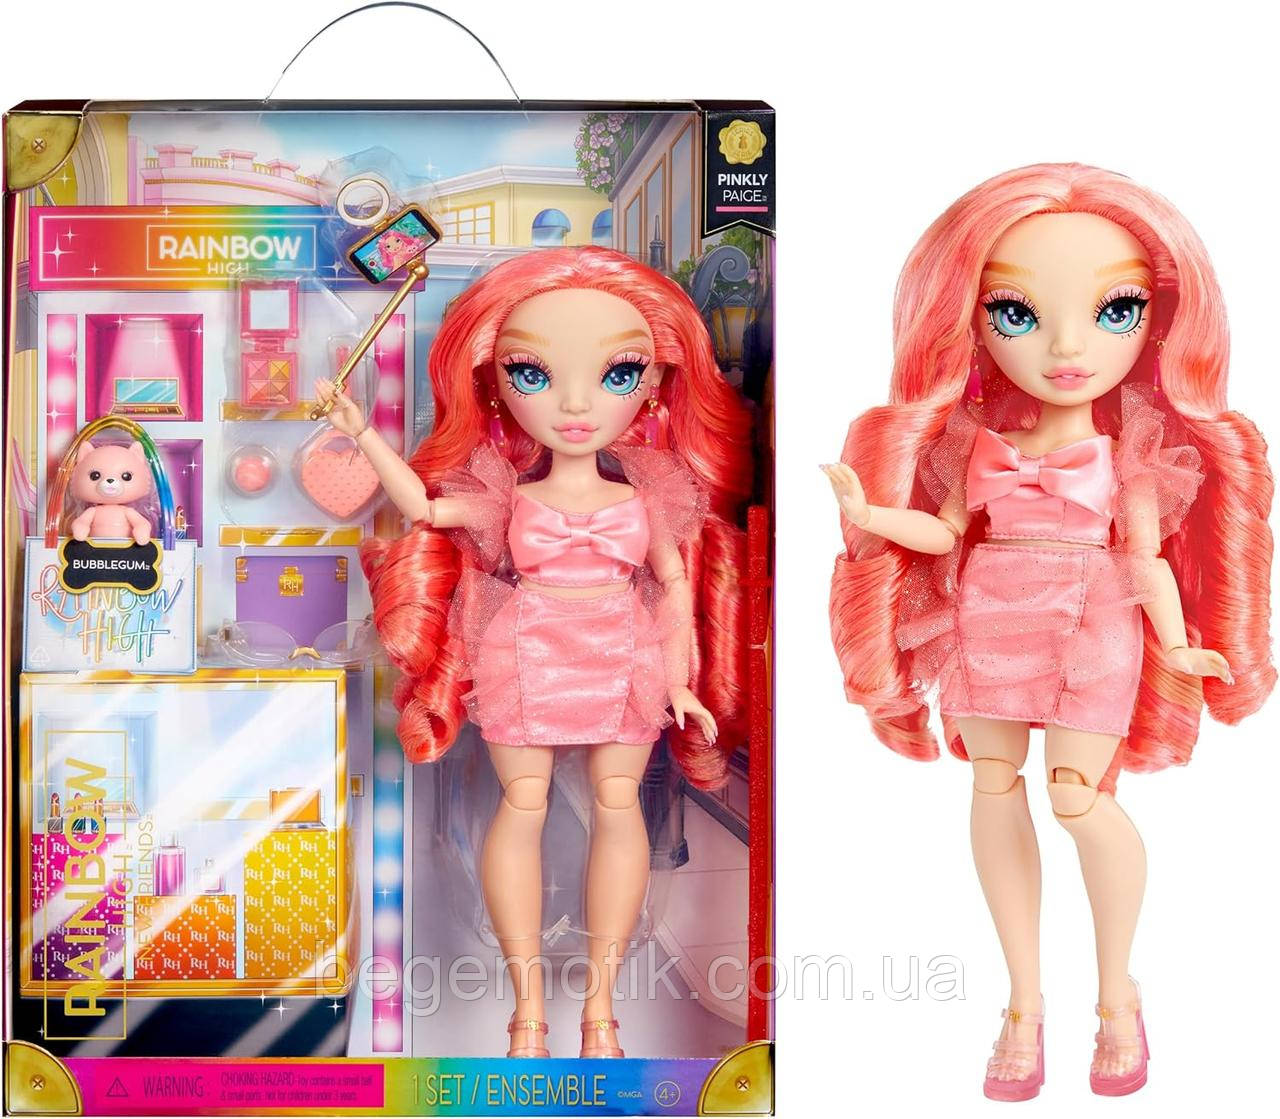 Лялька Рейнбоу Хай Нові друзі Пінкілі Пейдж з аксесуарами Rainbow Rainbow High Fashion Doll — Pinkly Paige